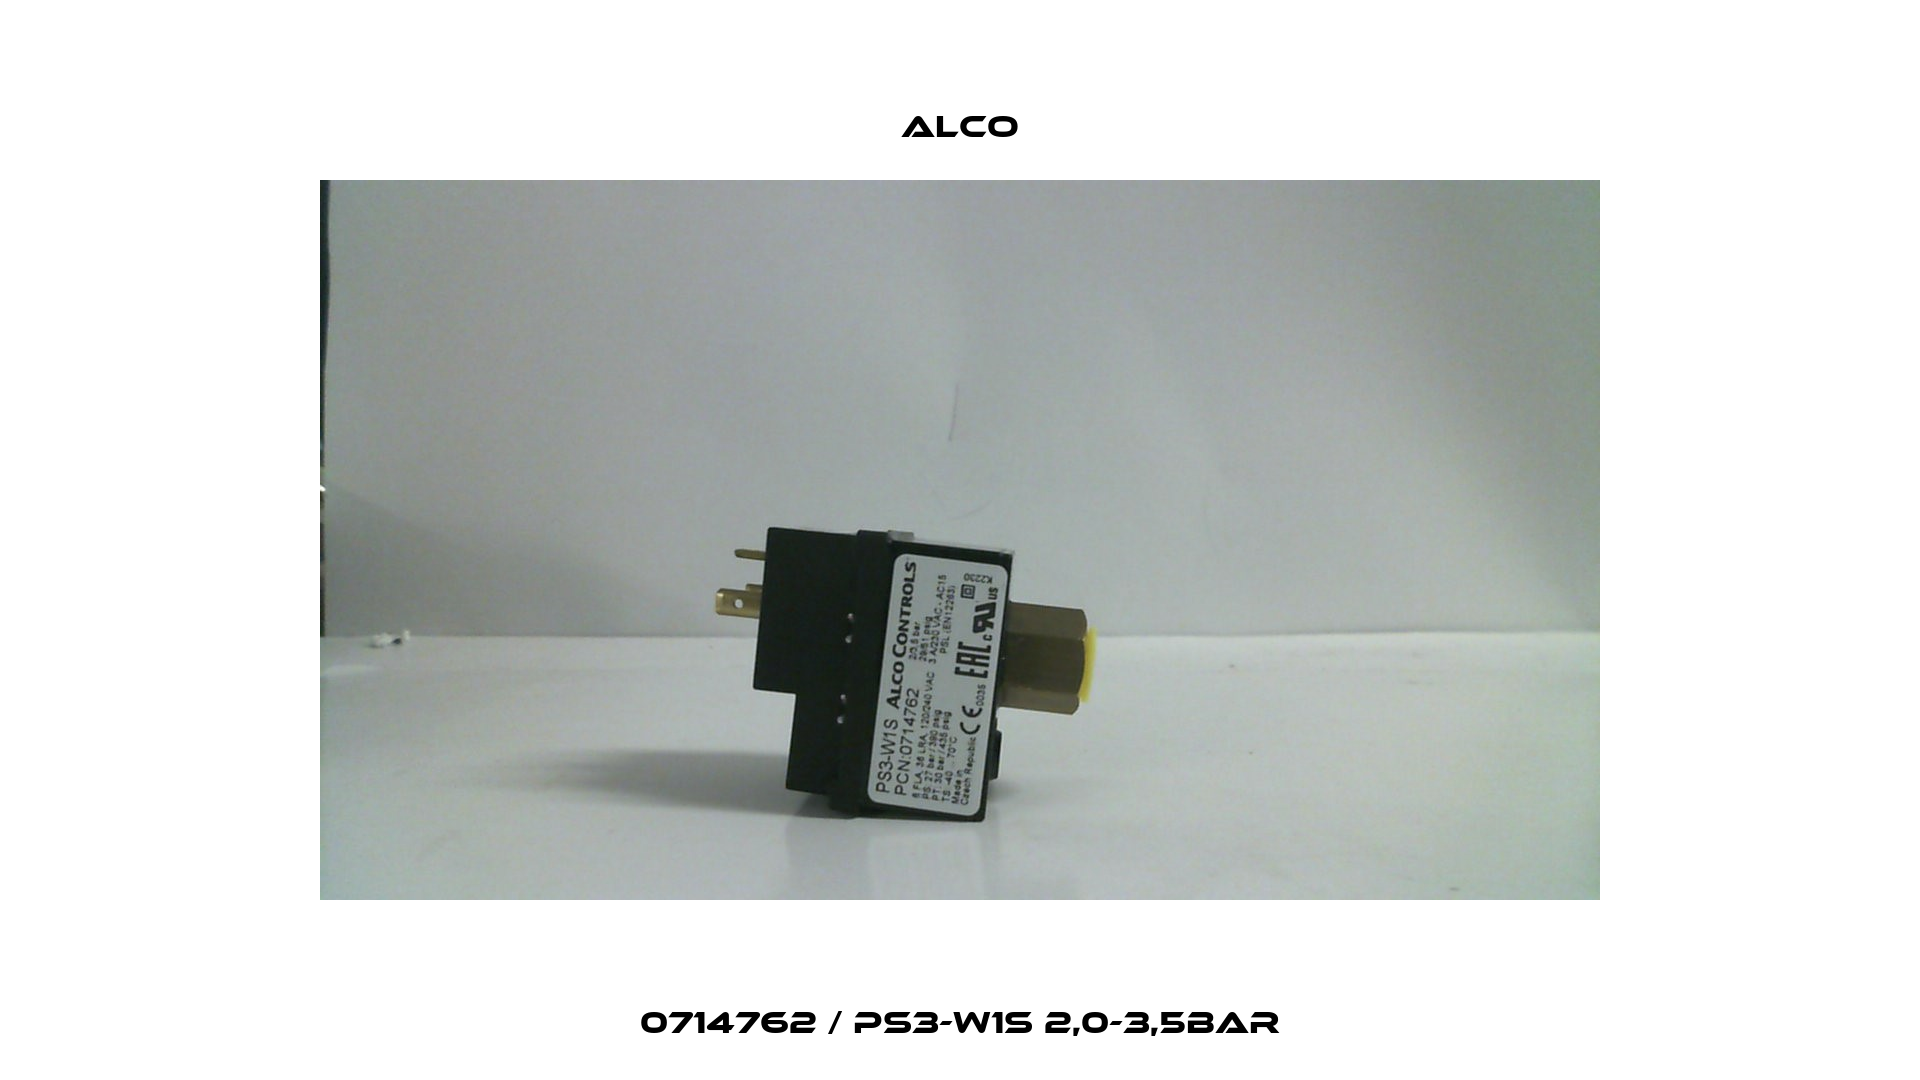 0714762 / PS3-W1S 2,0-3,5bar Alco